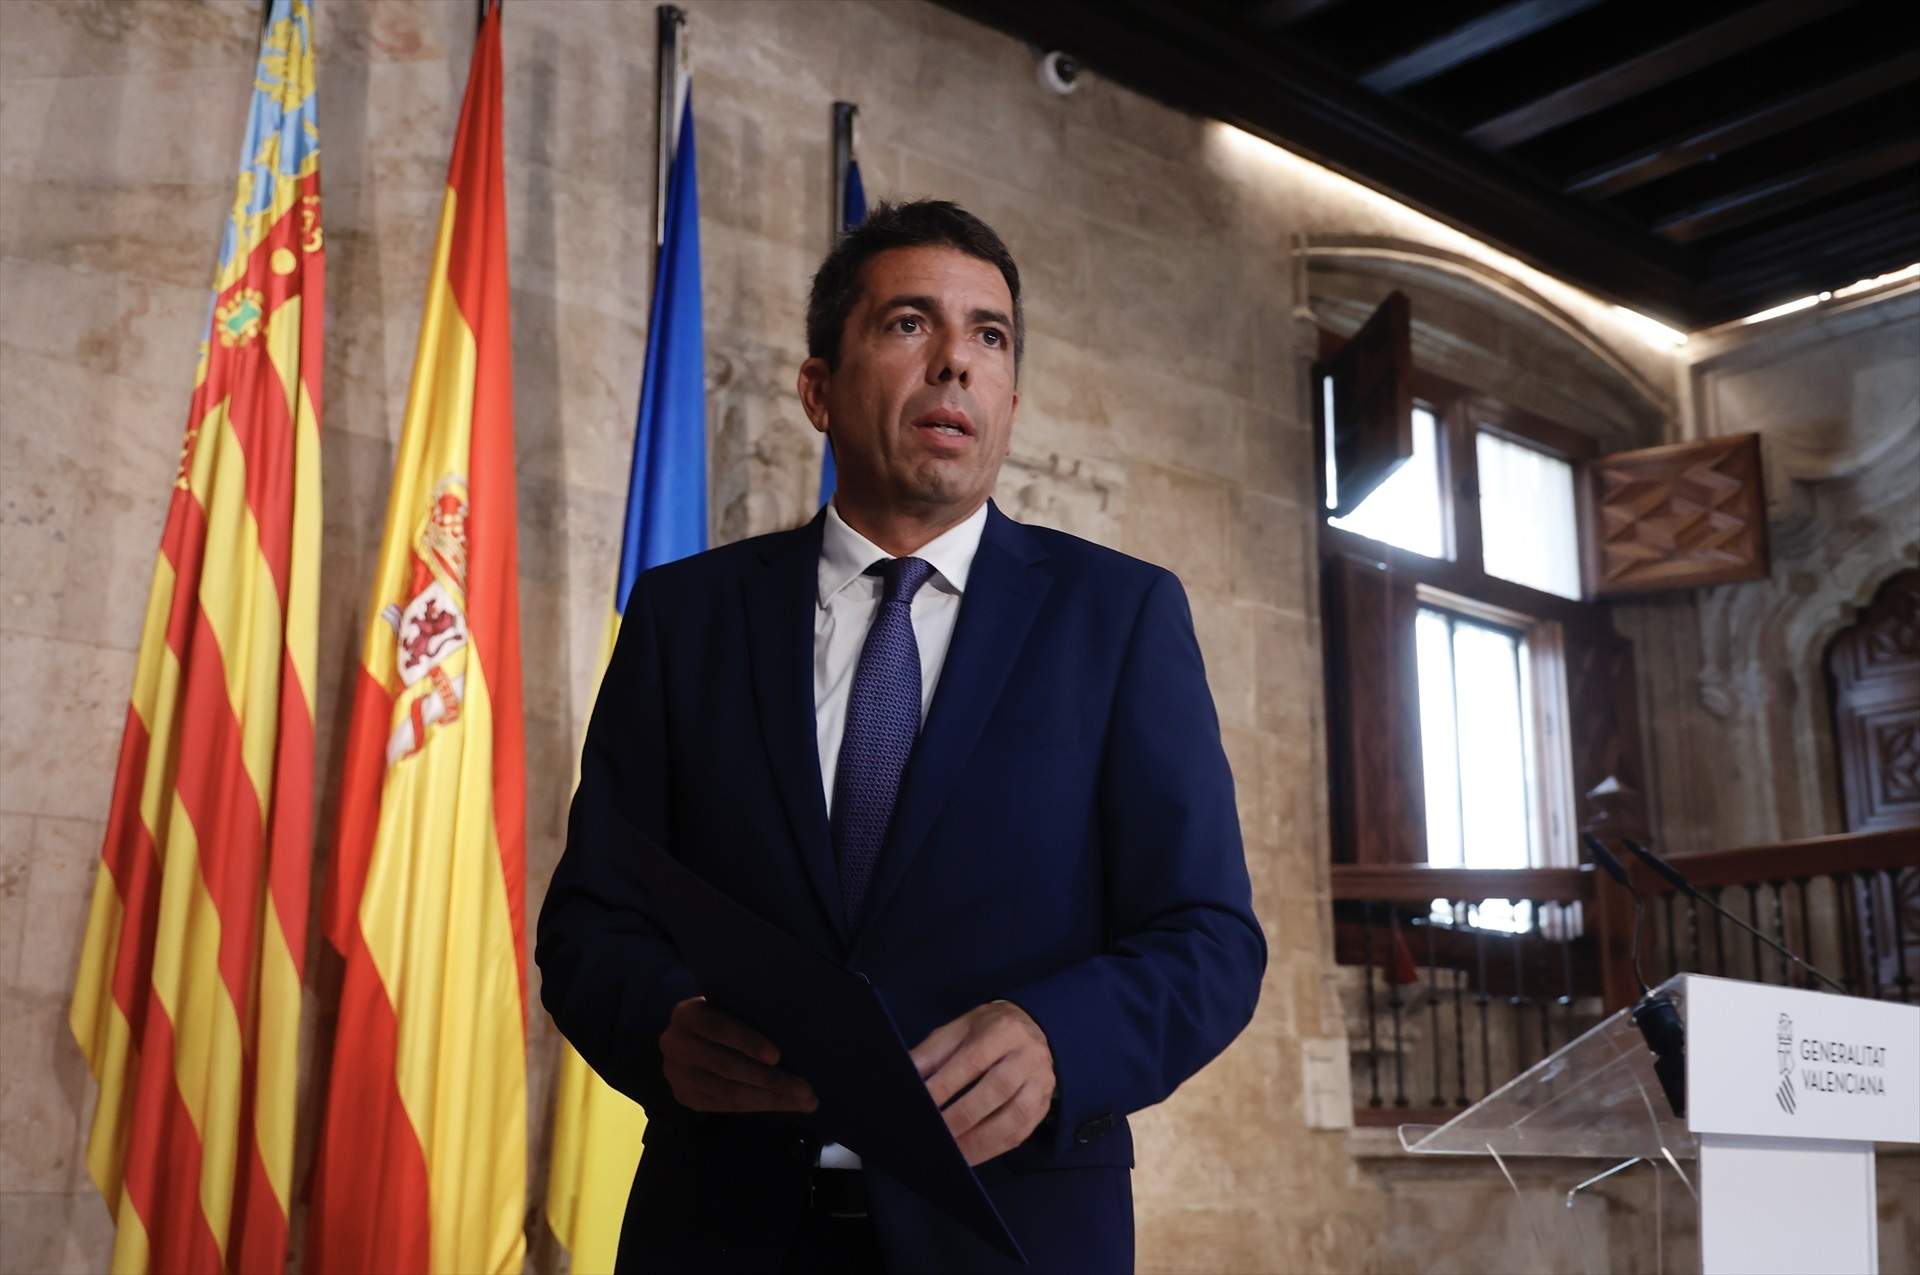 Mazón reorganitza el govern valencià després de la ruptura amb Vox i elimina la conselleria de Cultura